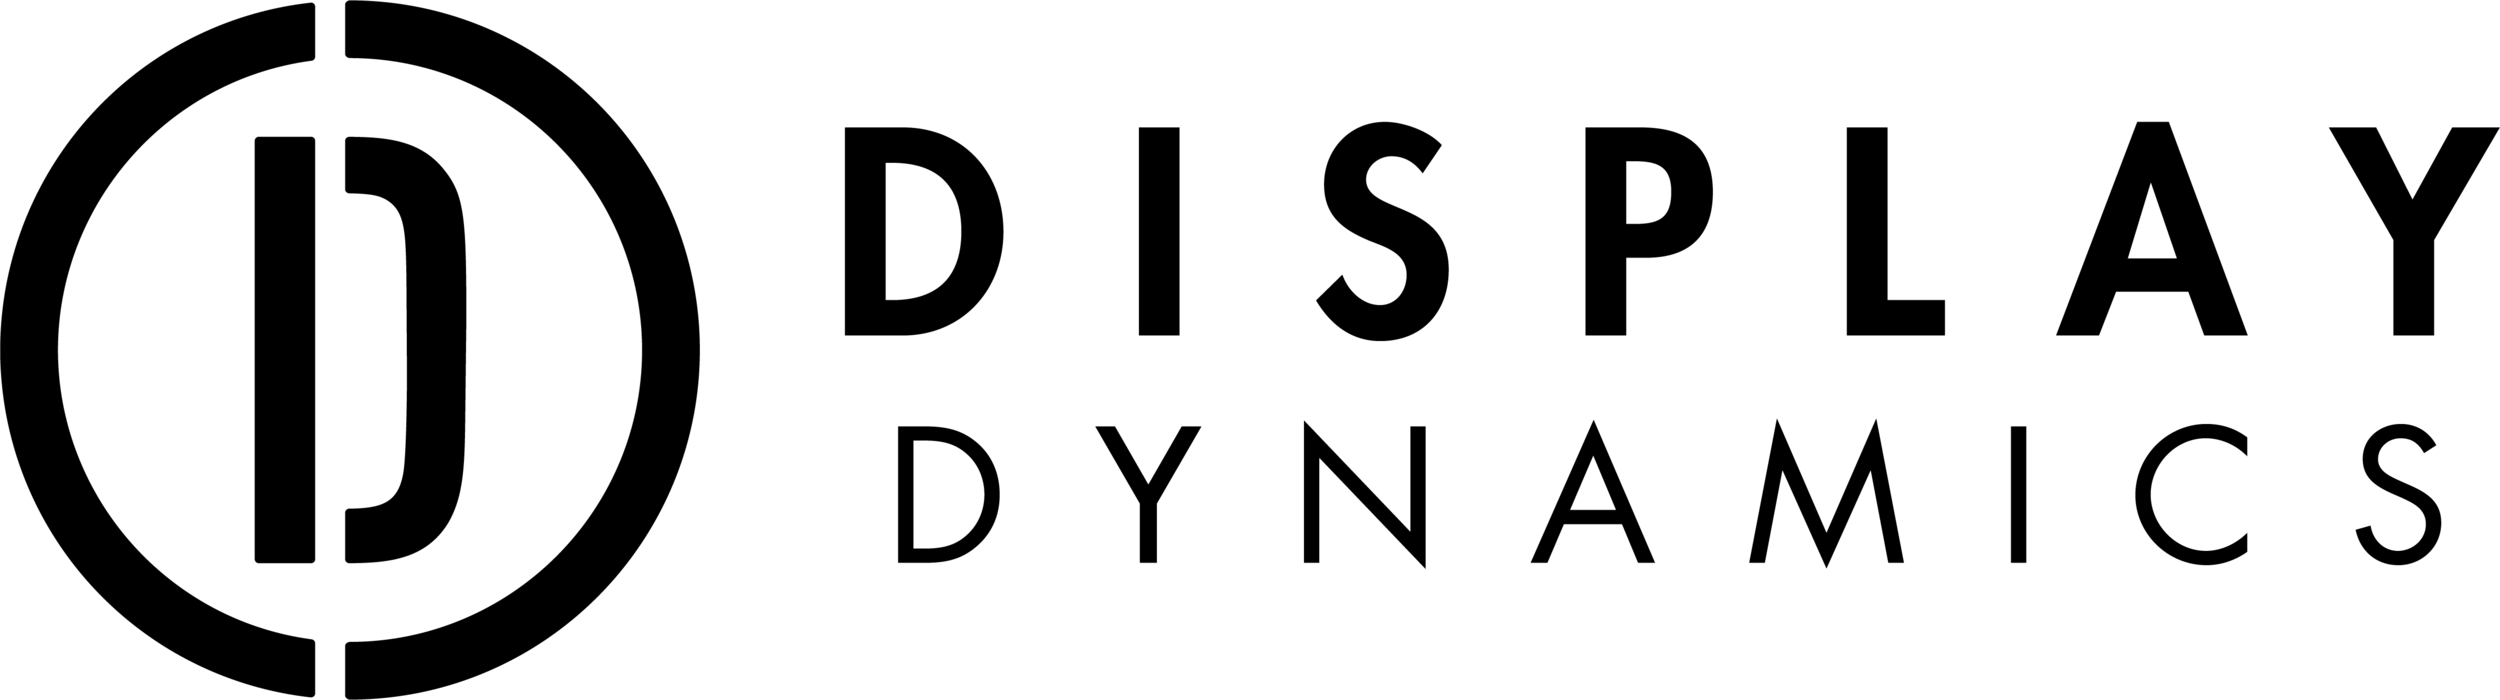 DD-Logo-Black-2lines.png